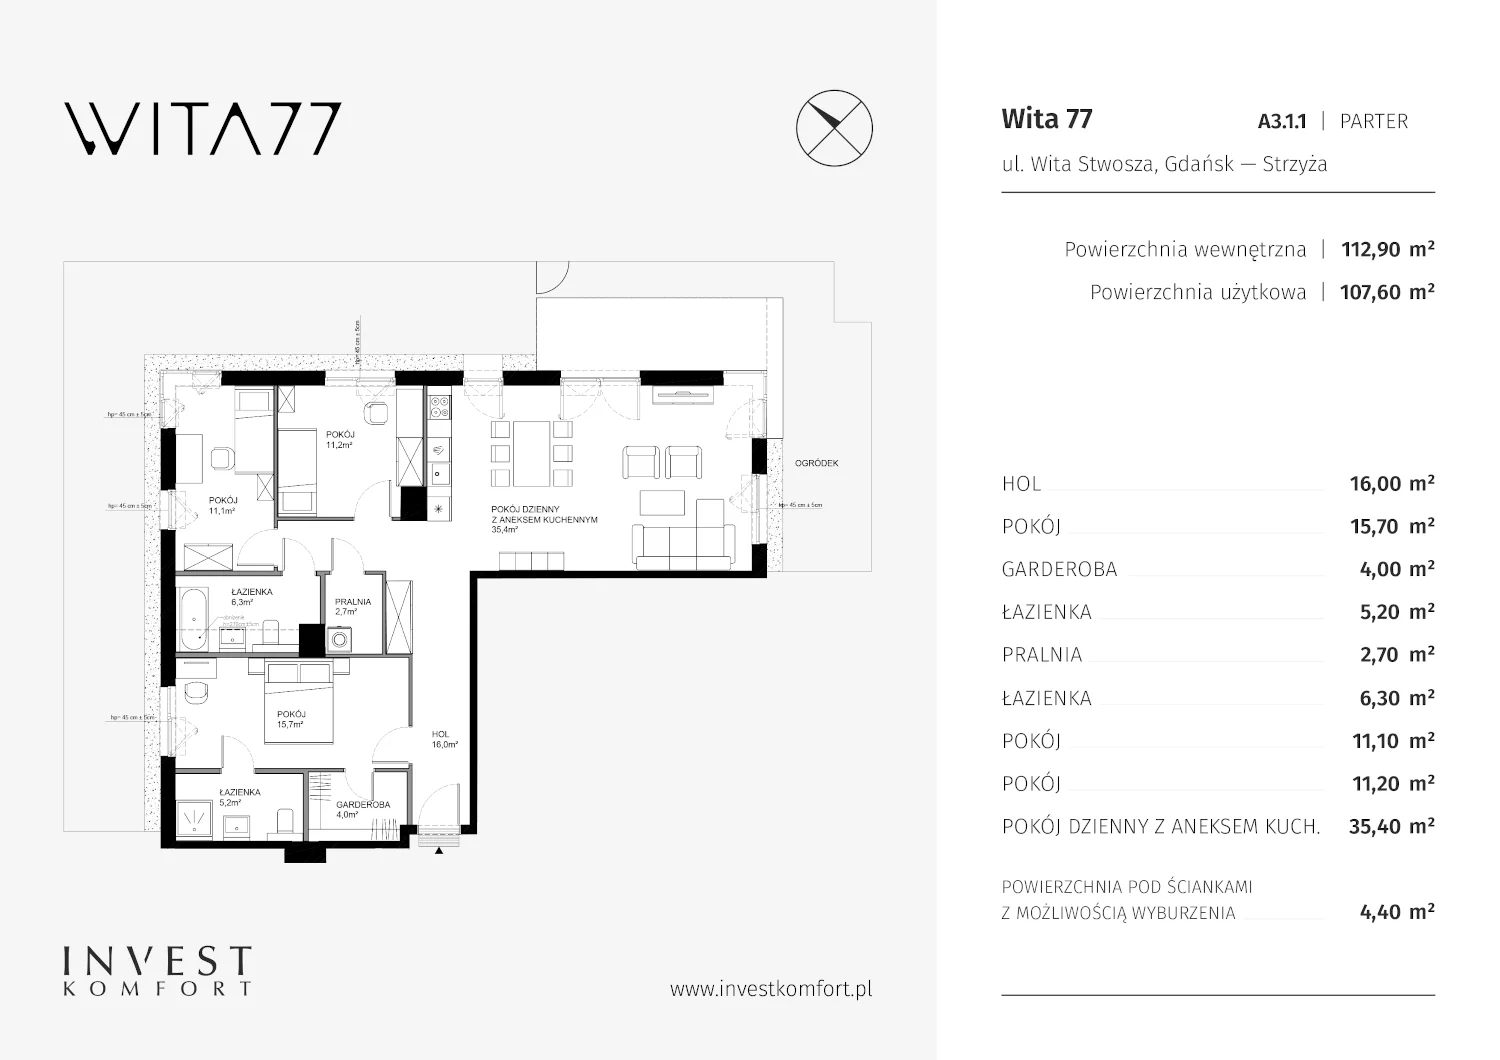 Mieszkanie 112,90 m², parter, oferta nr A3.1.1, Wita 77, Gdańsk, Strzyża, ul. Wita Stwosza 77